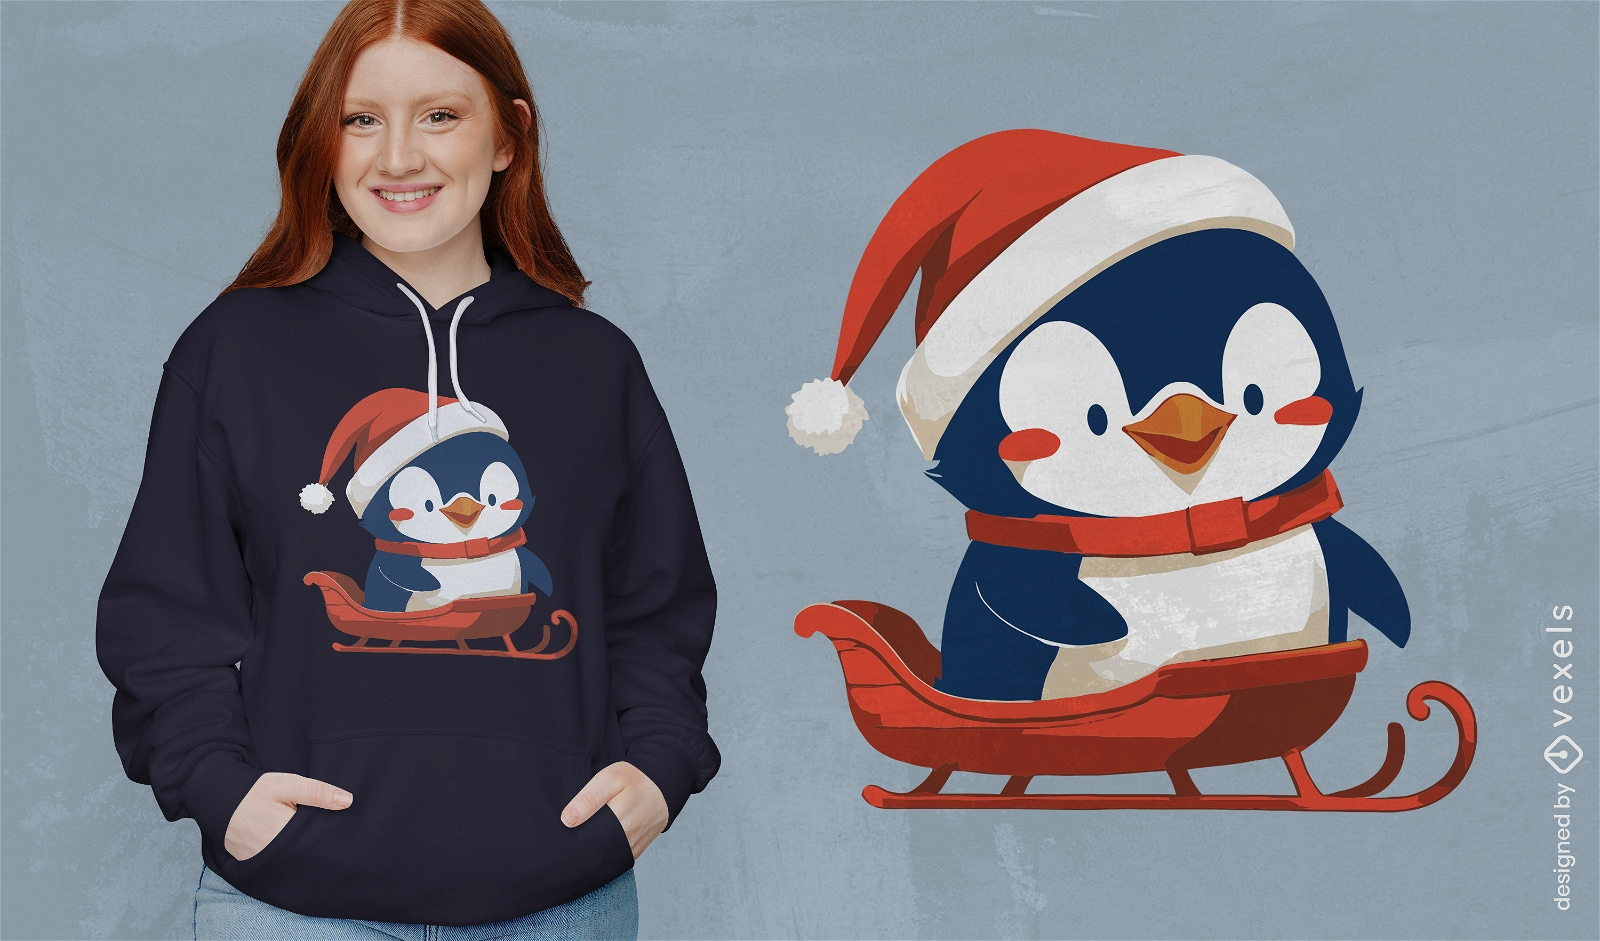 Penguin Christmas t-shirt design